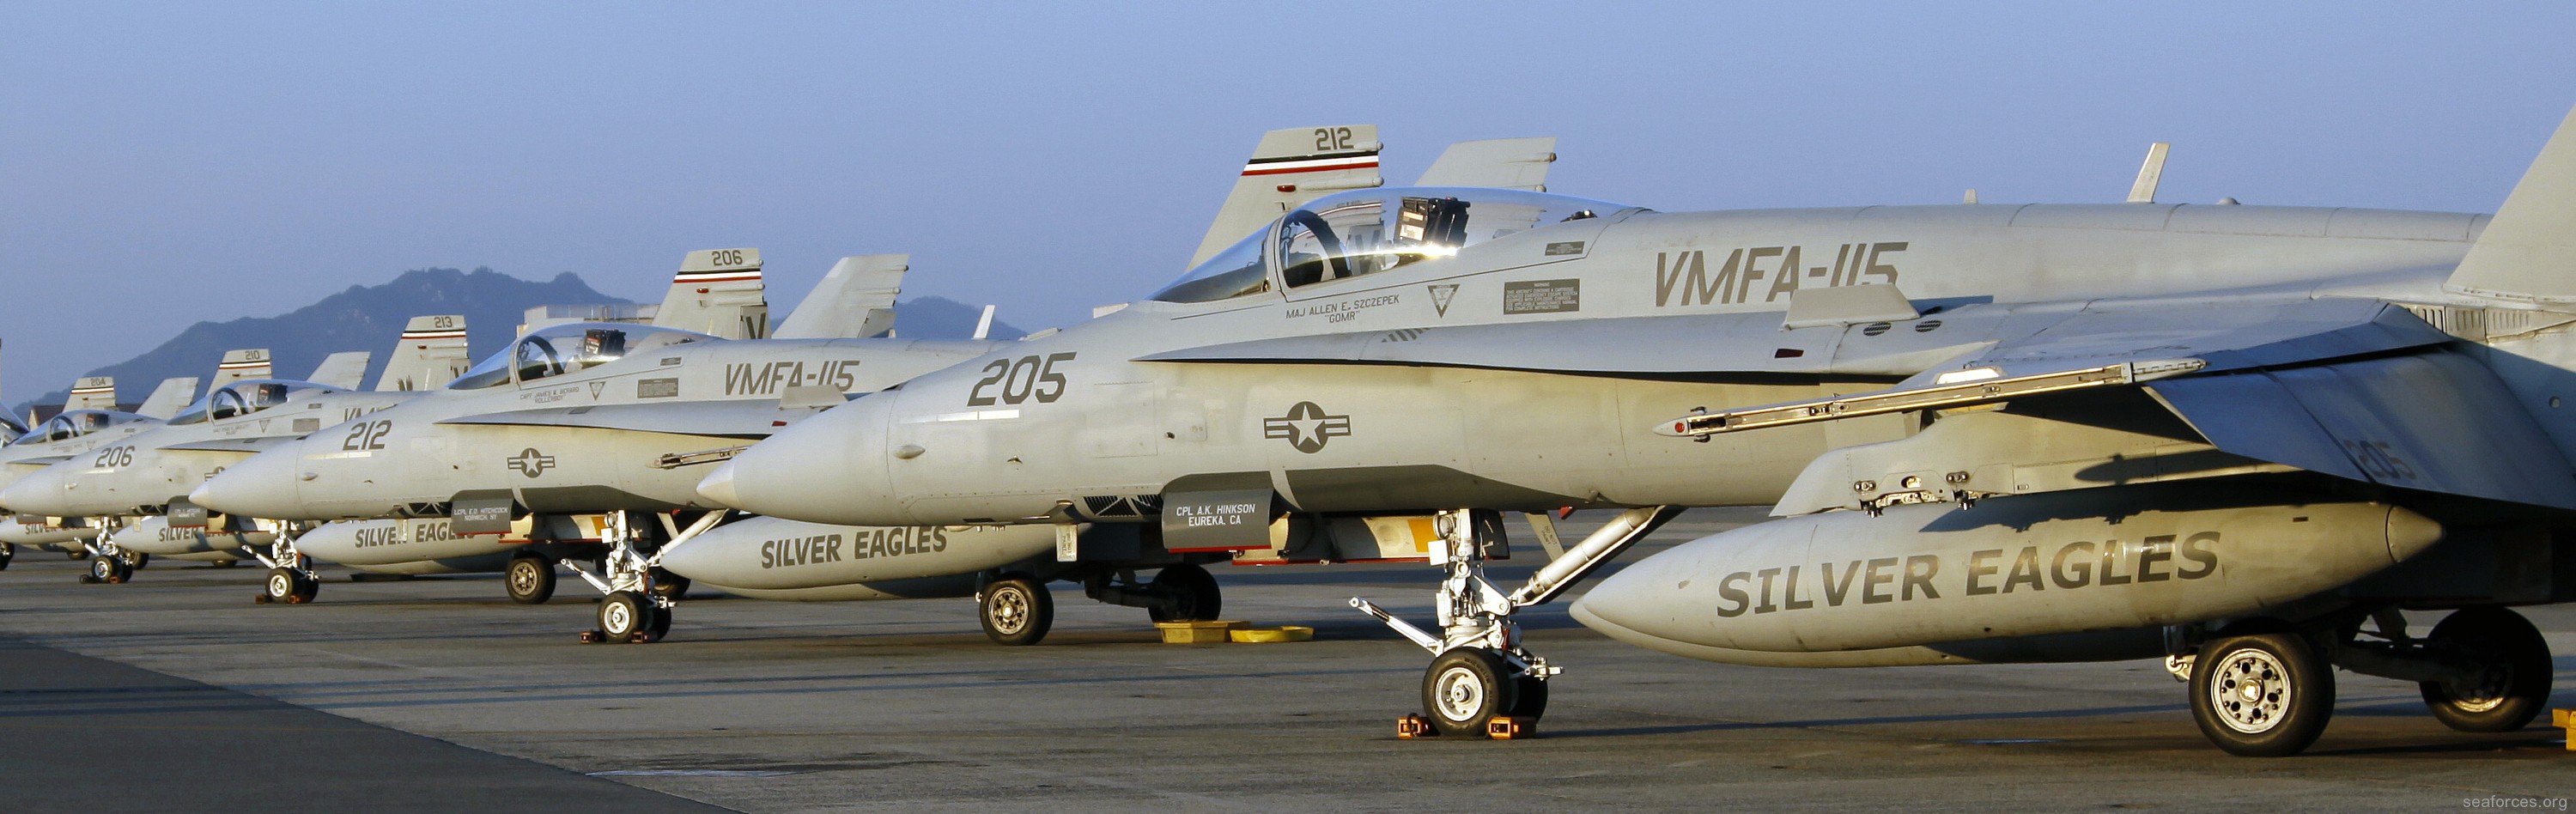 vmfa-115 silver eagles marine fighter attack squadron f/a-18a+ hornet 173